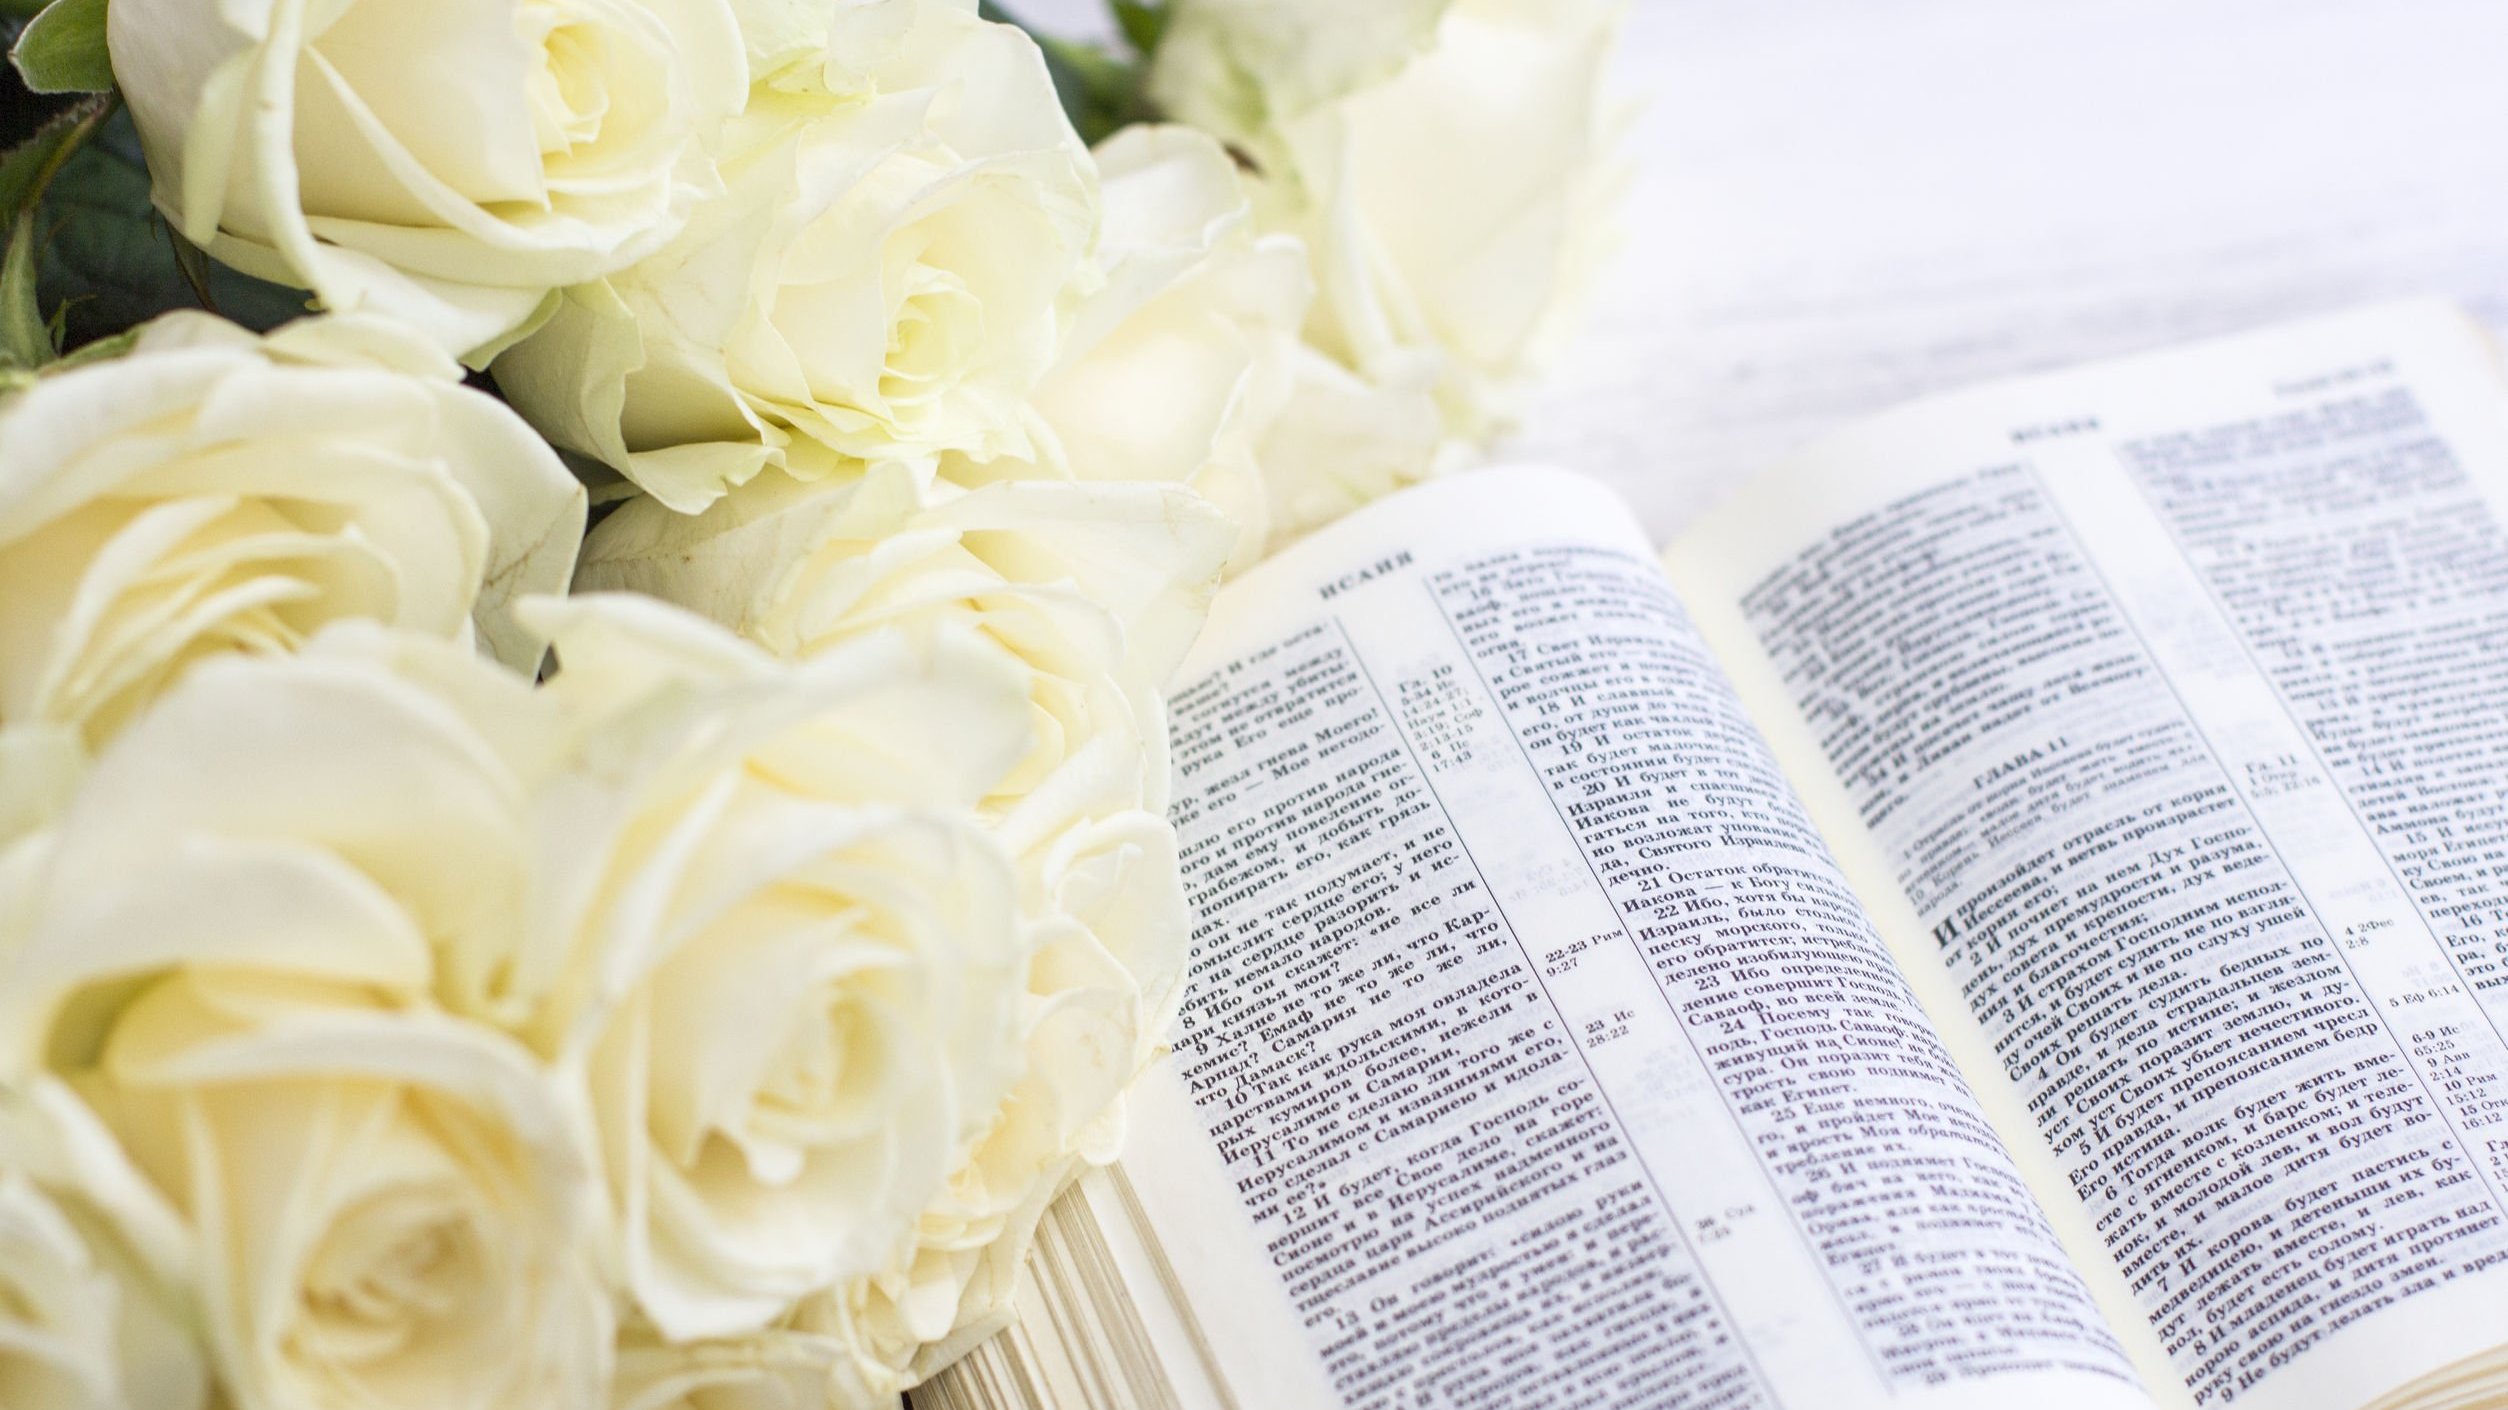 Bíblia aberta com flores brancas ao lado.